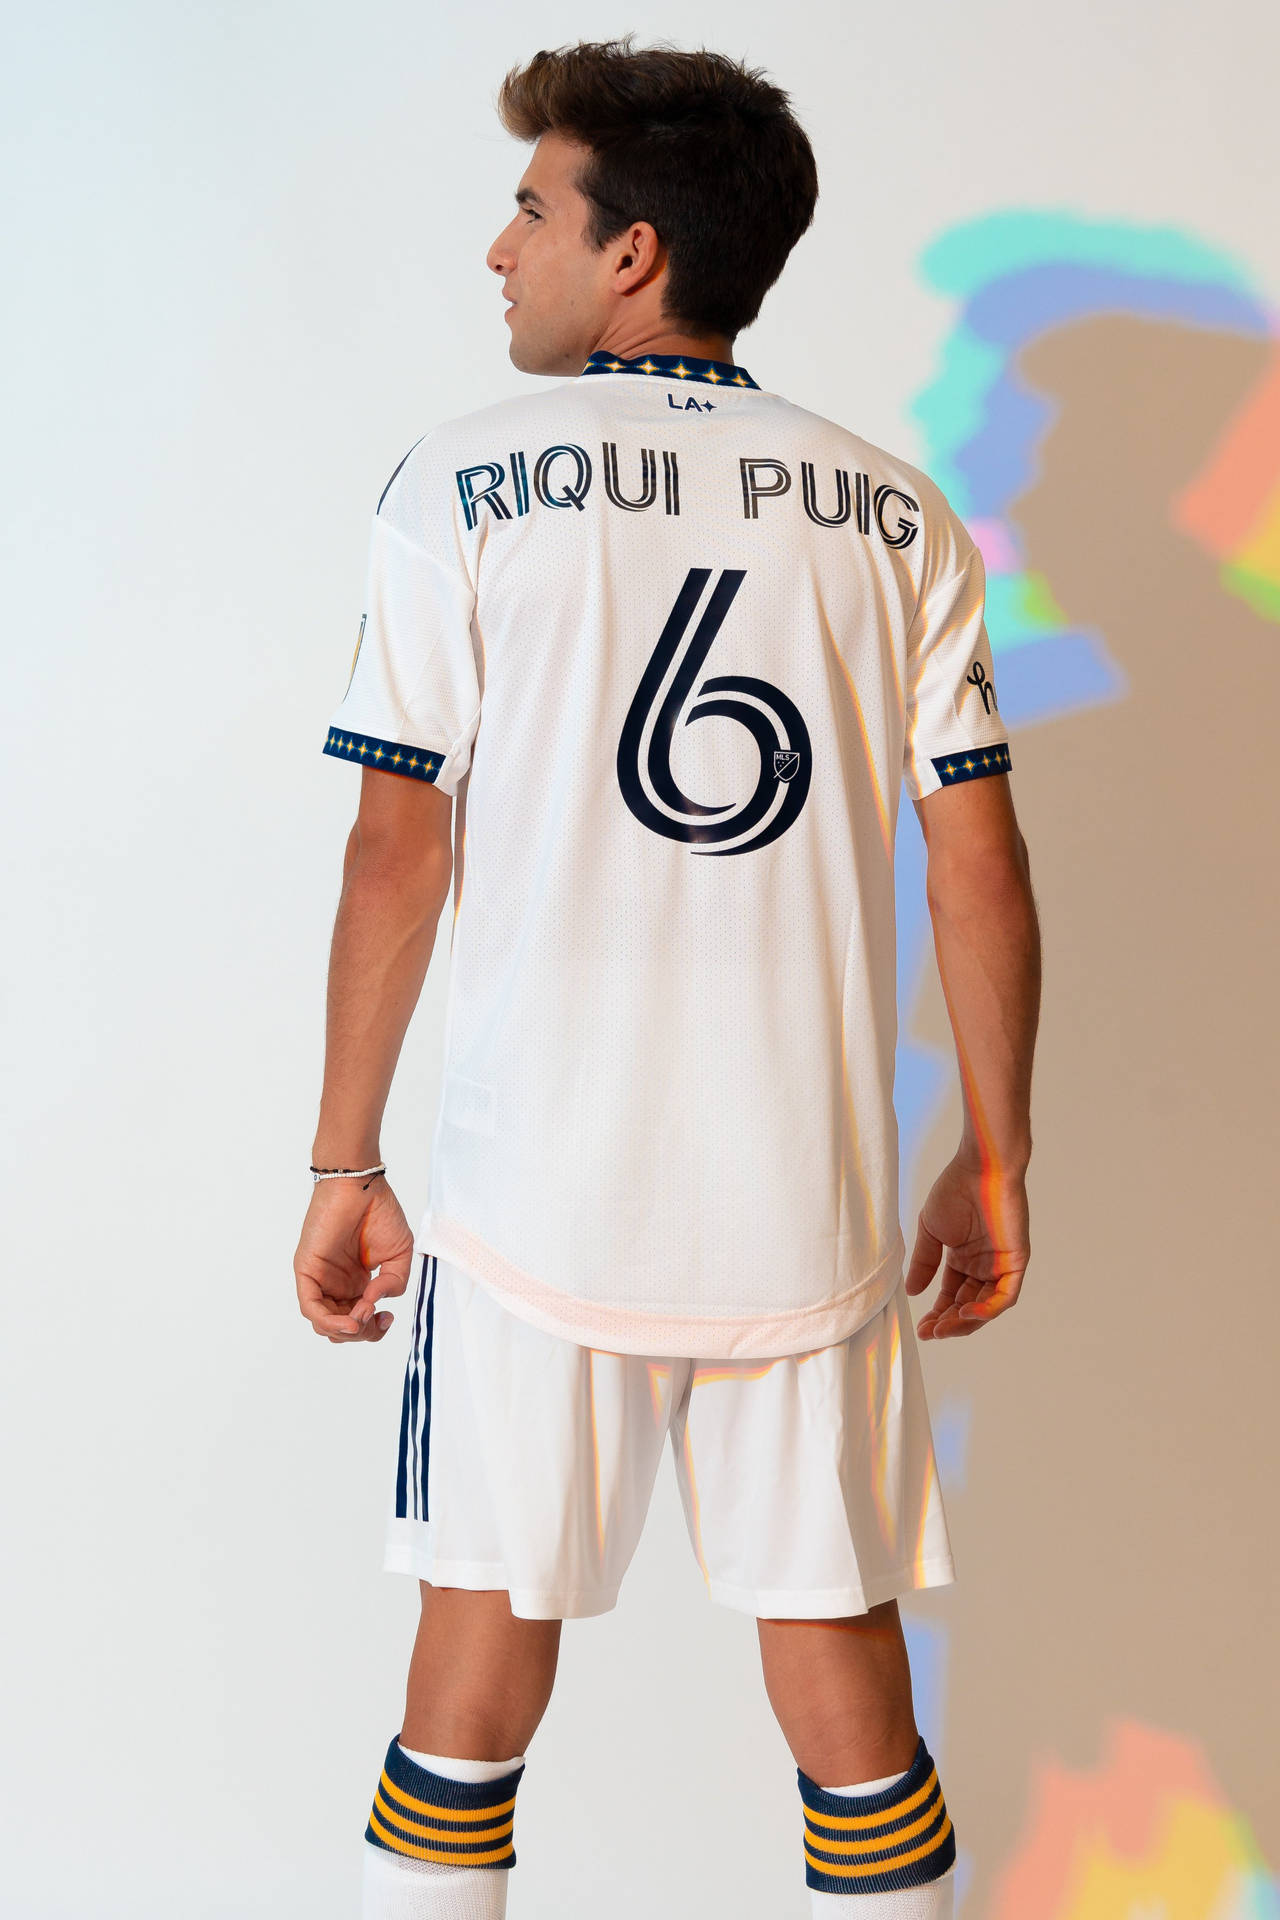 Download Riqui Puig Los Angeles Galaxy Uniform Back Pose Wallpaper ...